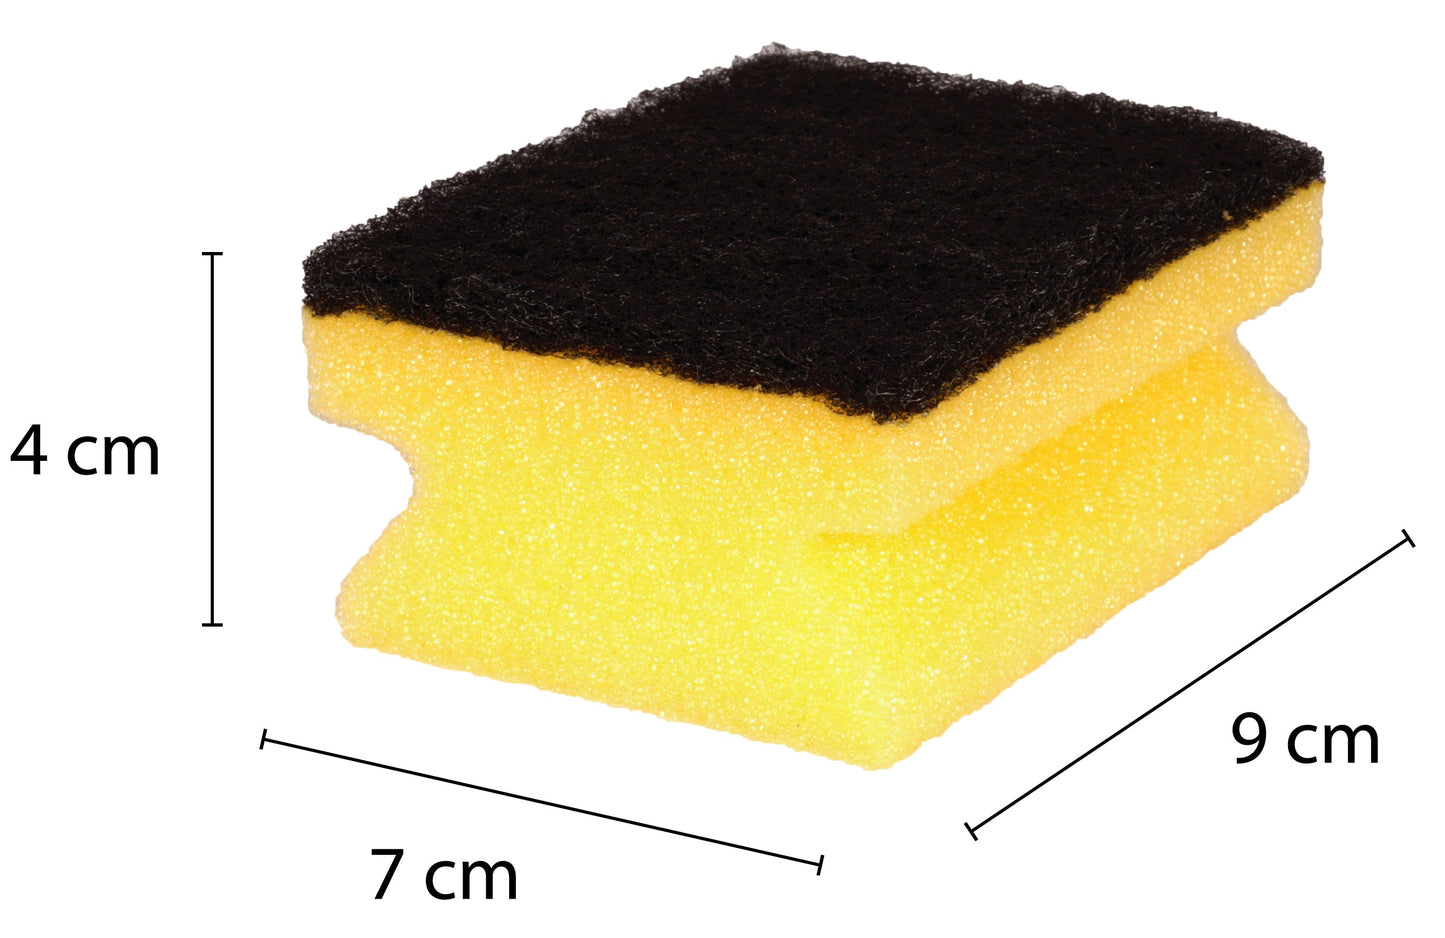 Sonty 10 Stück Topfreiniger Premium- Schwamm mit Schleifmittel- 9 x 7 x 4 cm schwarz/gelb